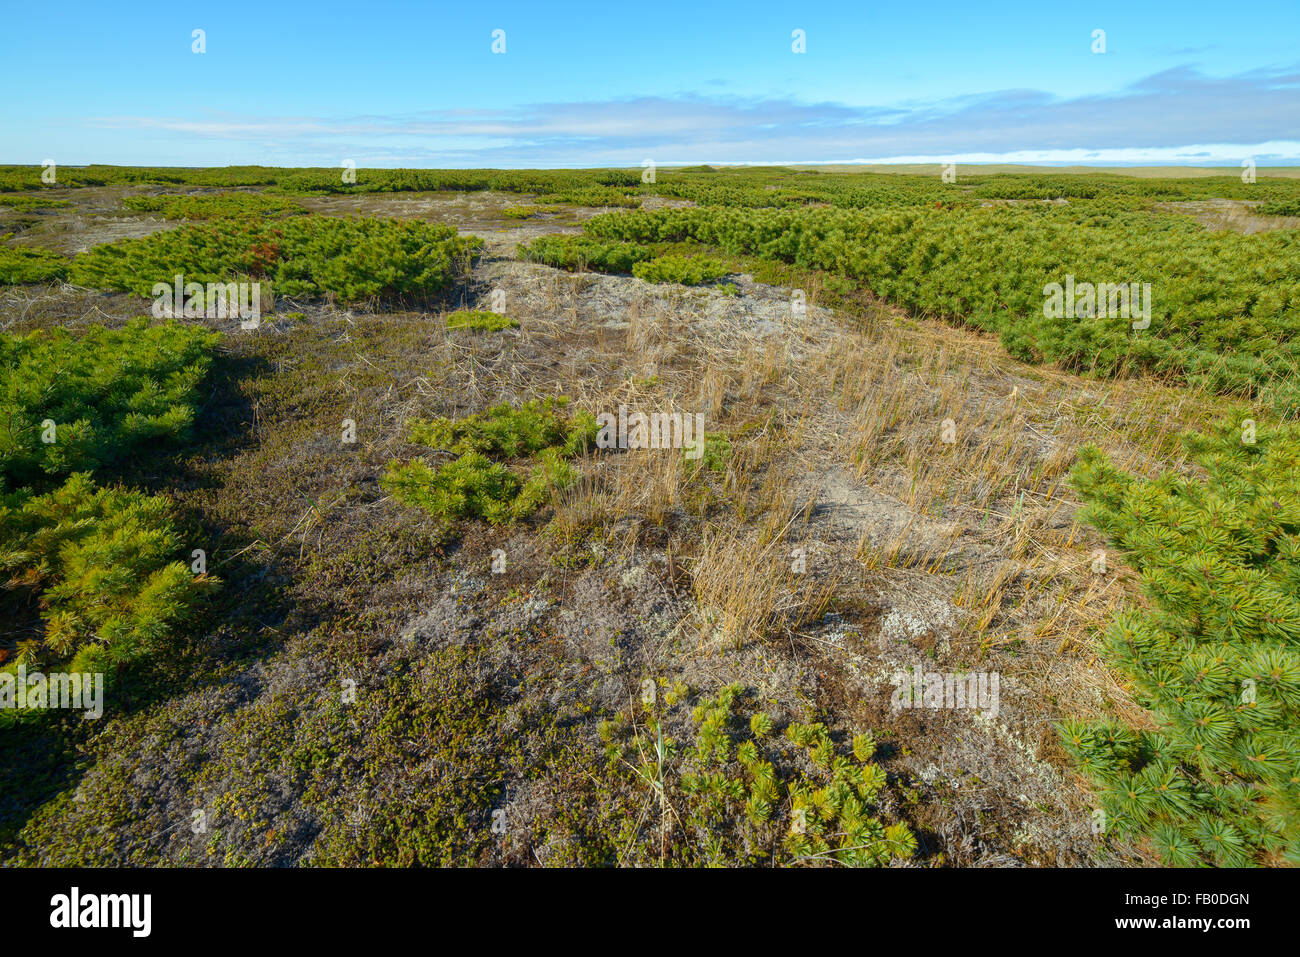 La natura, la flora e la fauna della parte settentrionale dell'isola di Sakhalin, Russia. Paesaggi, paesaggi marini, animali. Spiedo di sabbia Piltun. Foto Stock